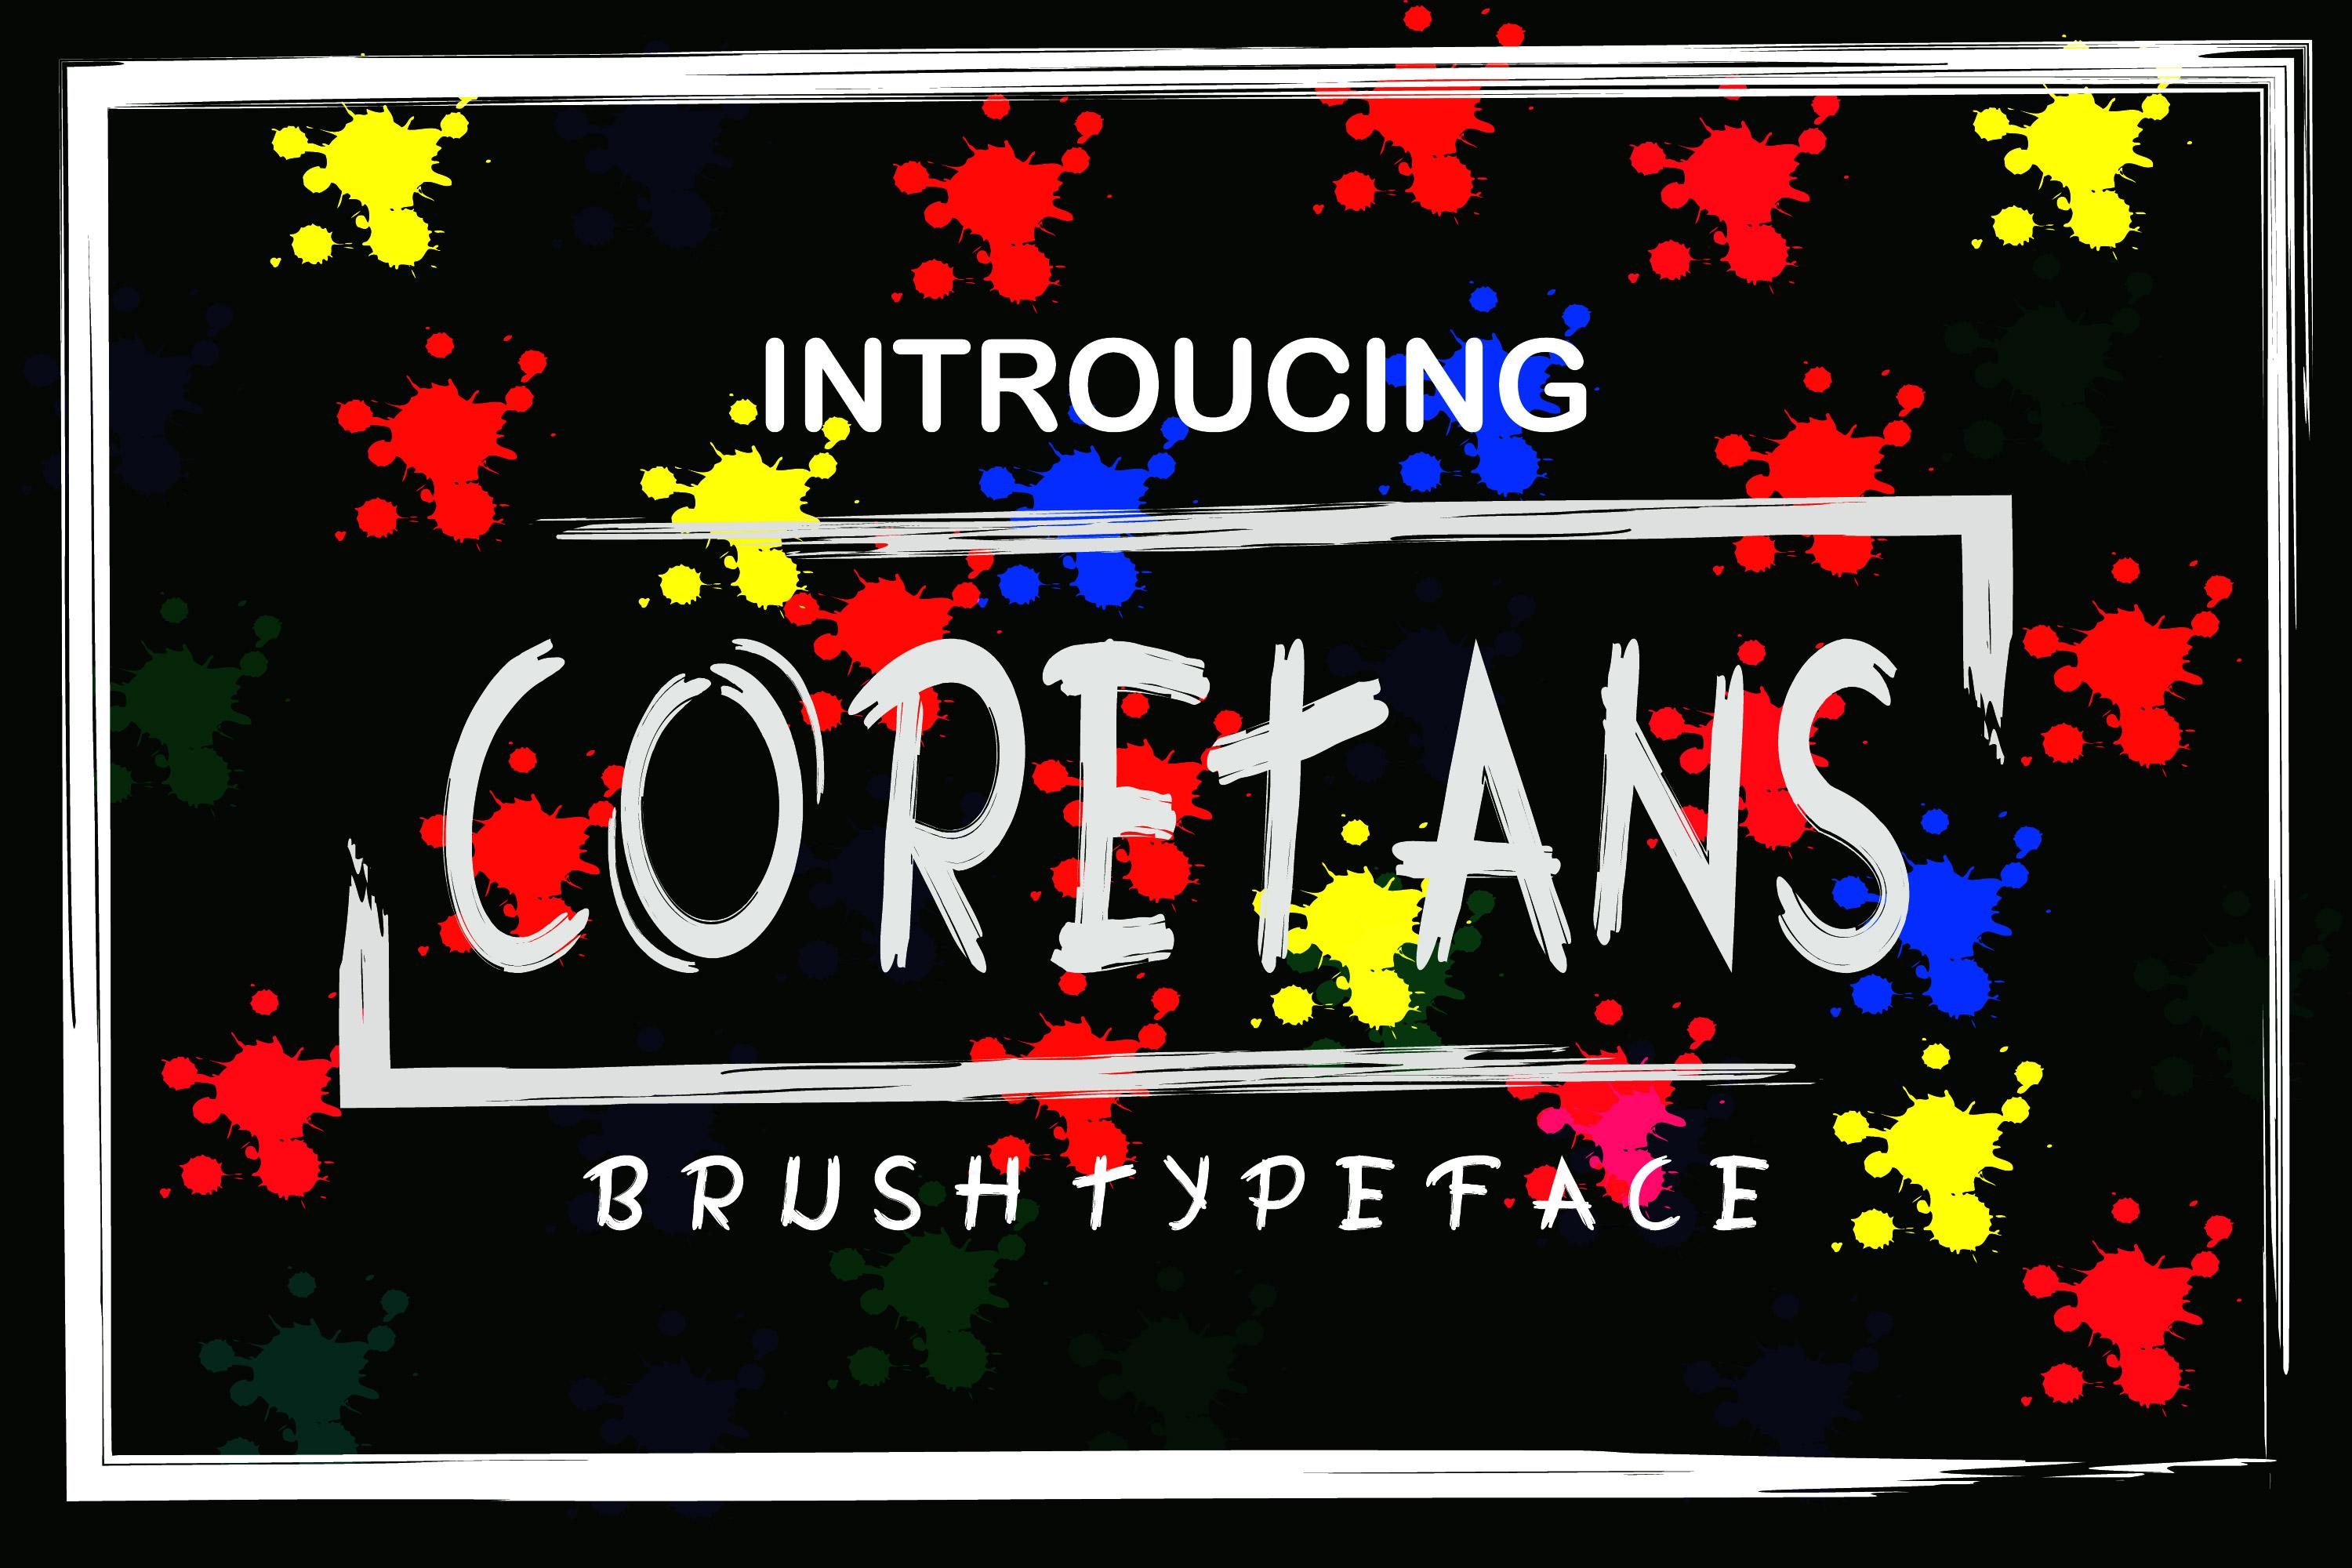 Coretans Font